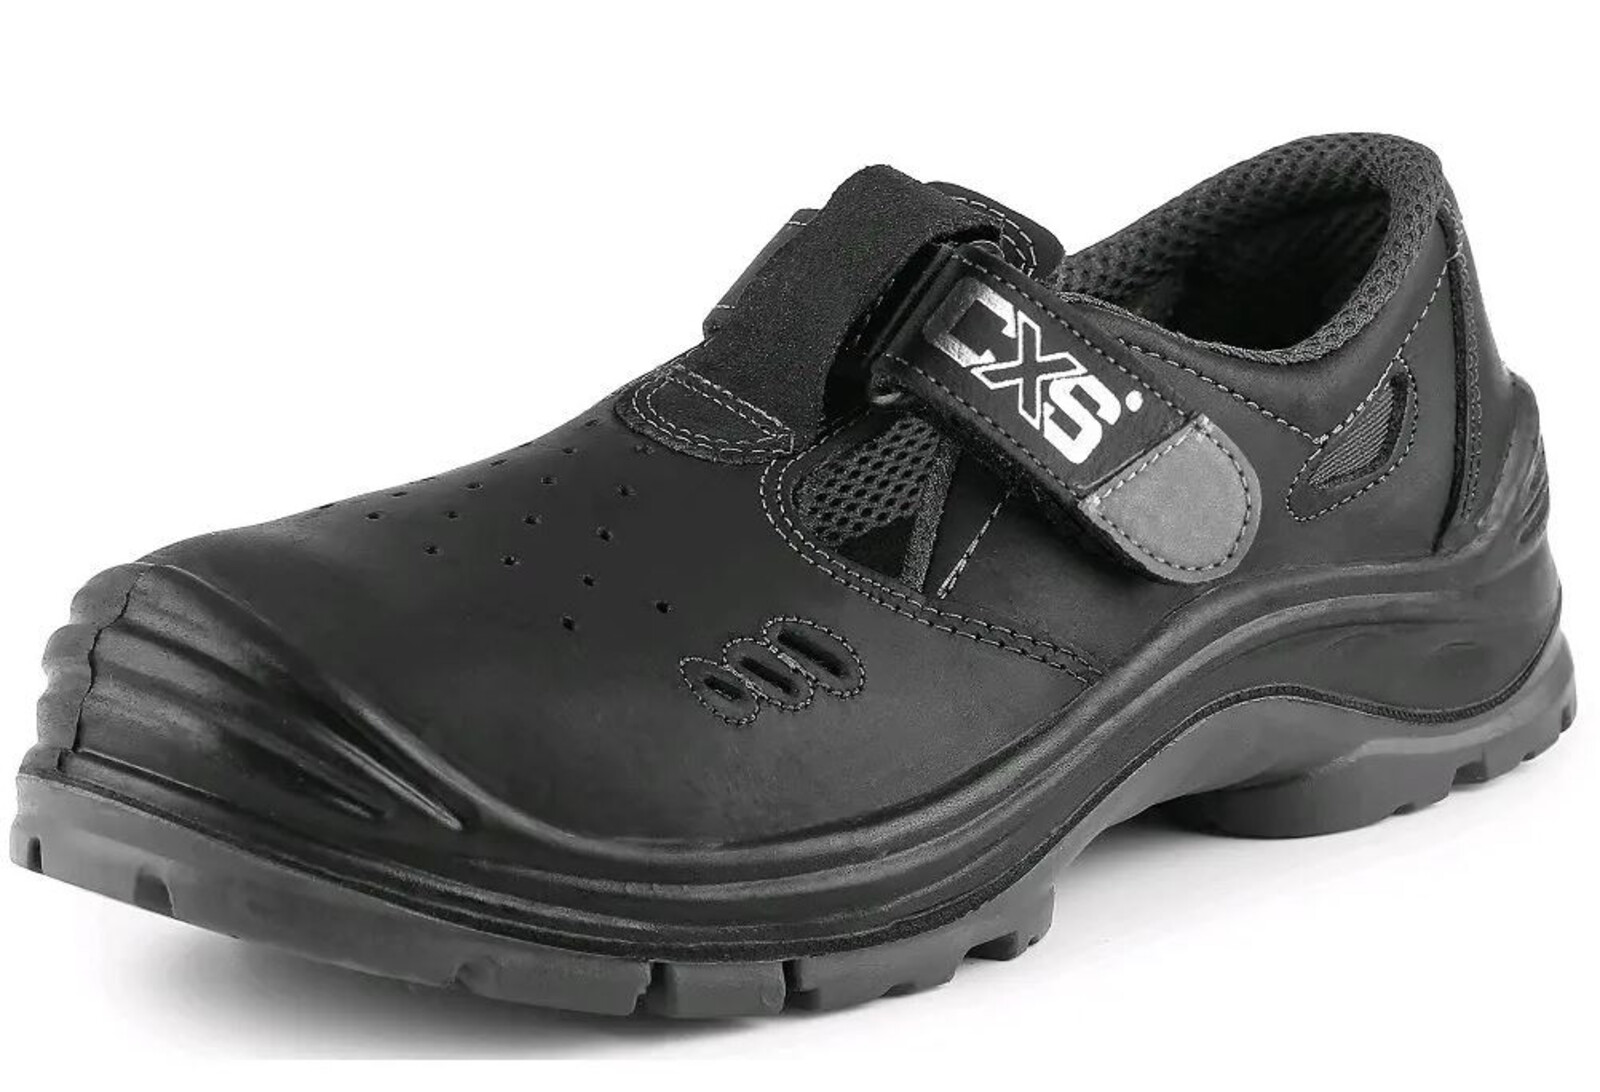 Bezpečnostné sandále CXS Safety Steel Iron S1 - veľkosť: 44, farba: čierna